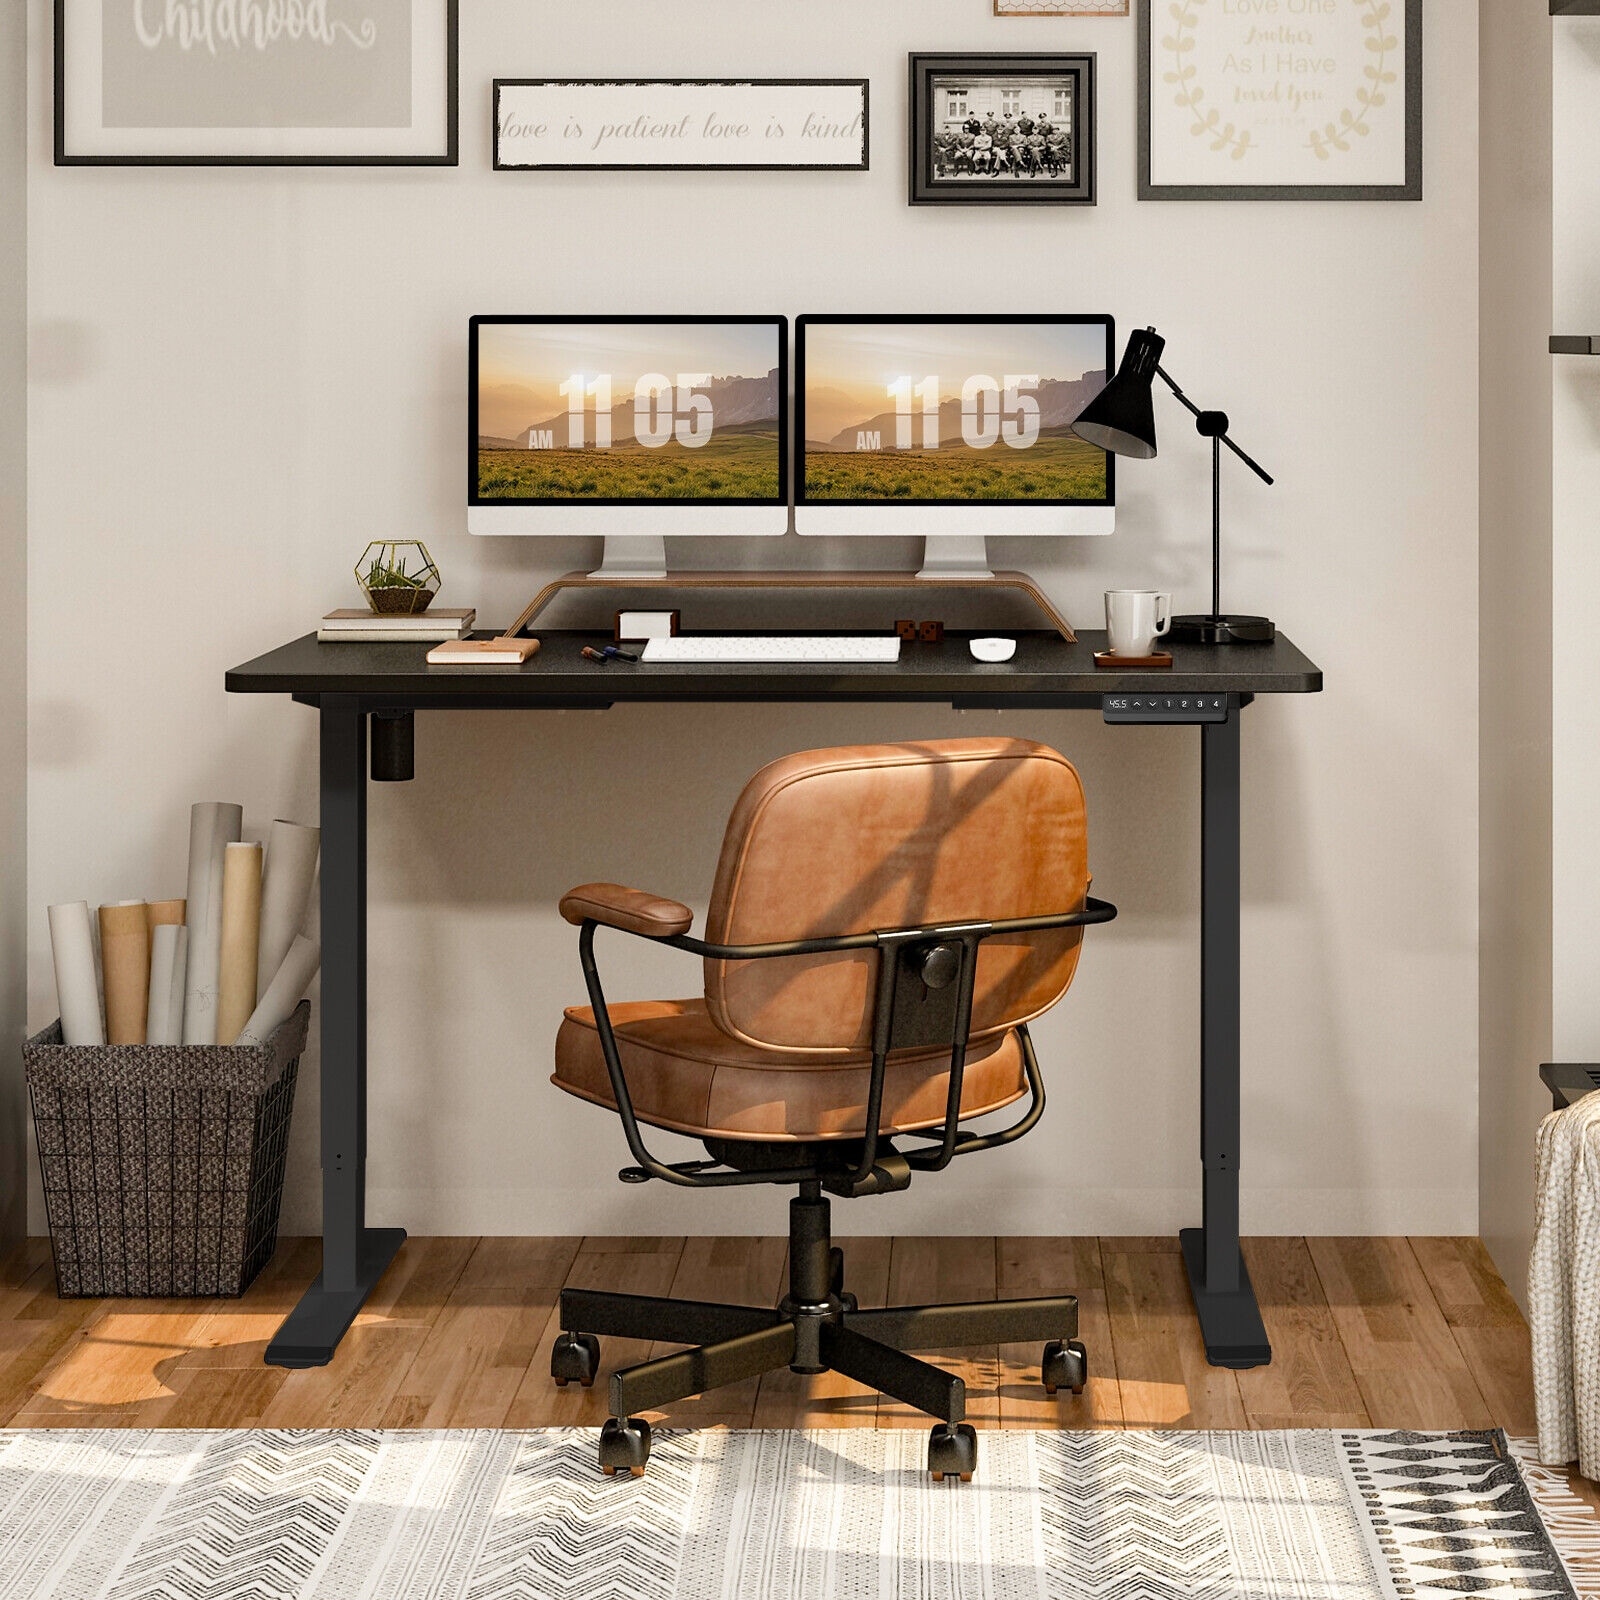 55 Electric Standing Desk Computer Desk Adjustable Home Office